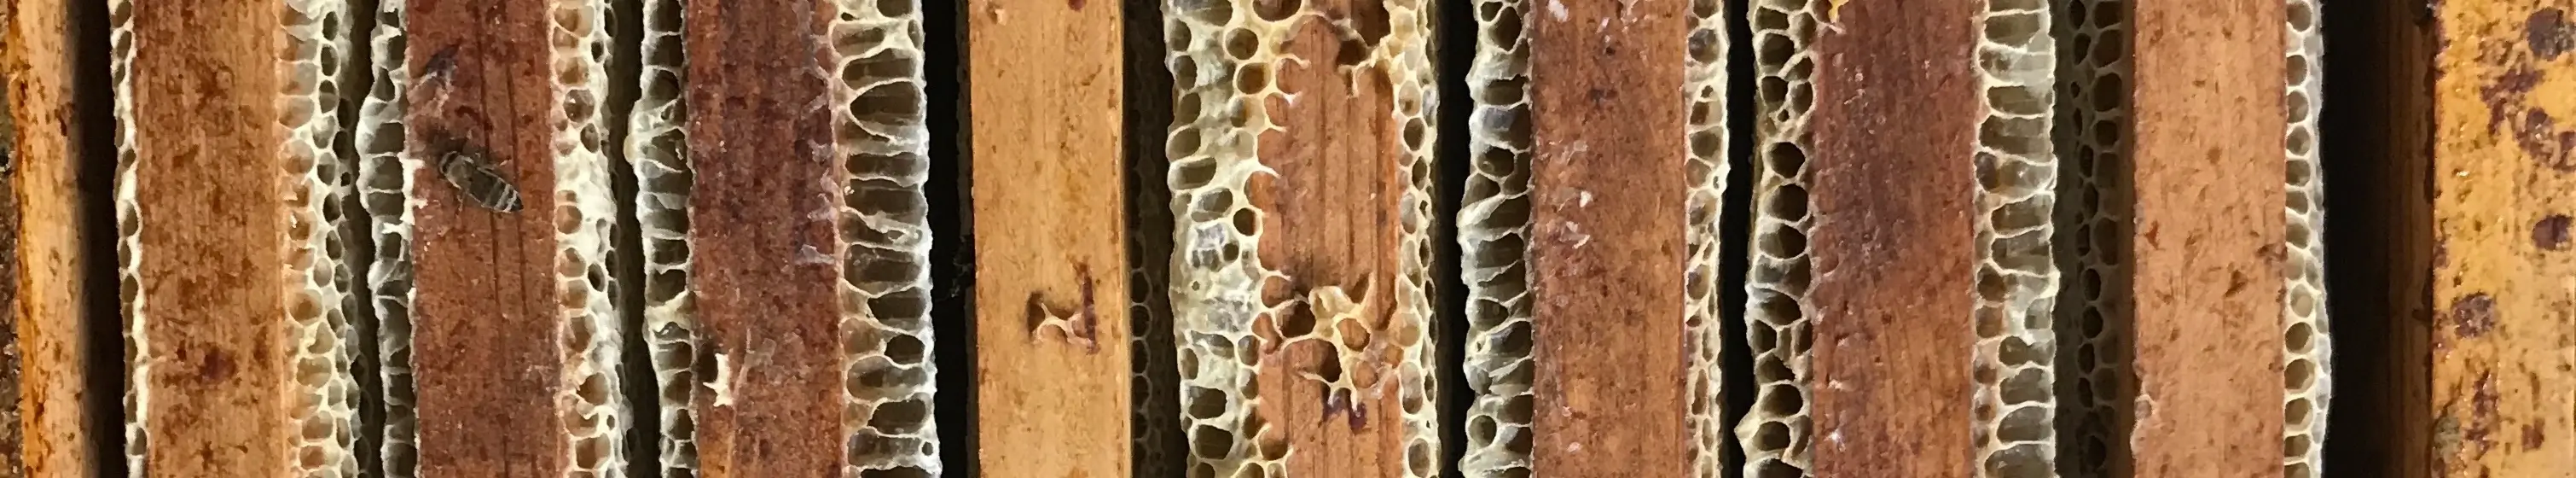 Interieur d&rsquo;une ruche